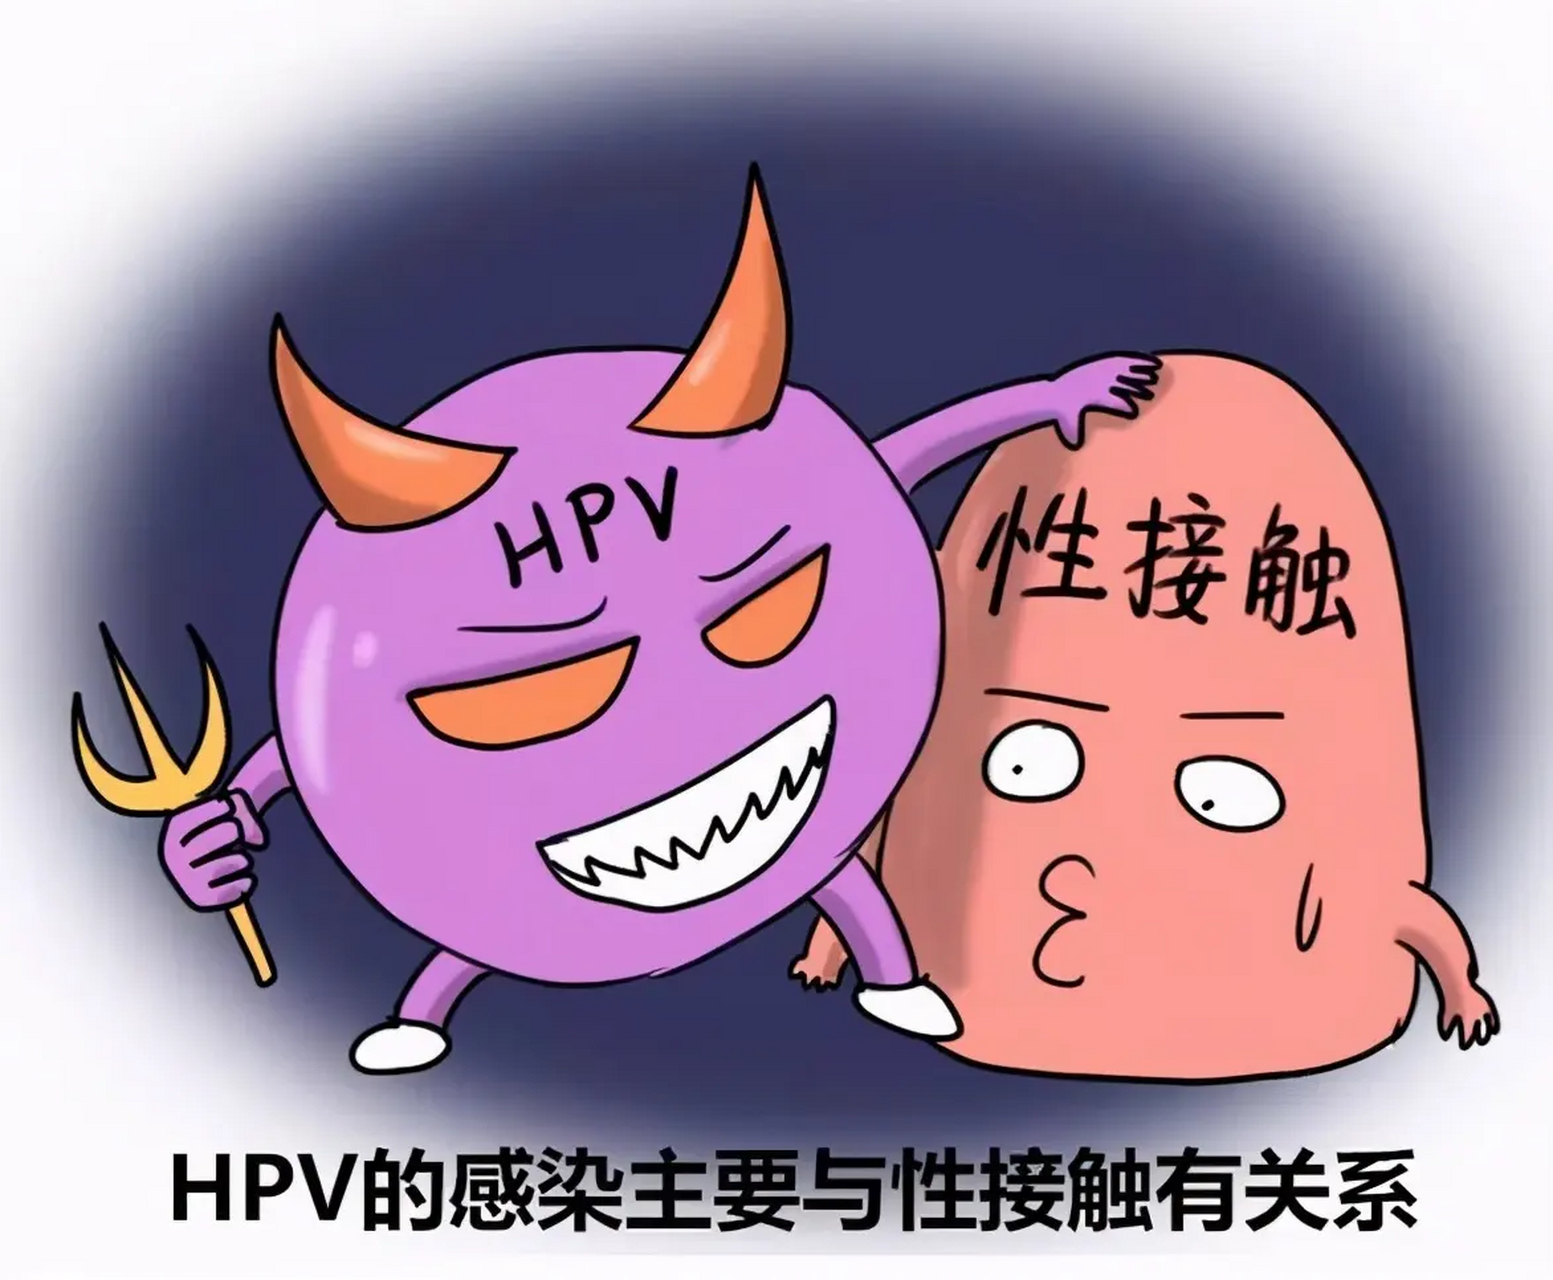 能治好吗  hpv病毒中文全名叫做人乳头瘤状病毒